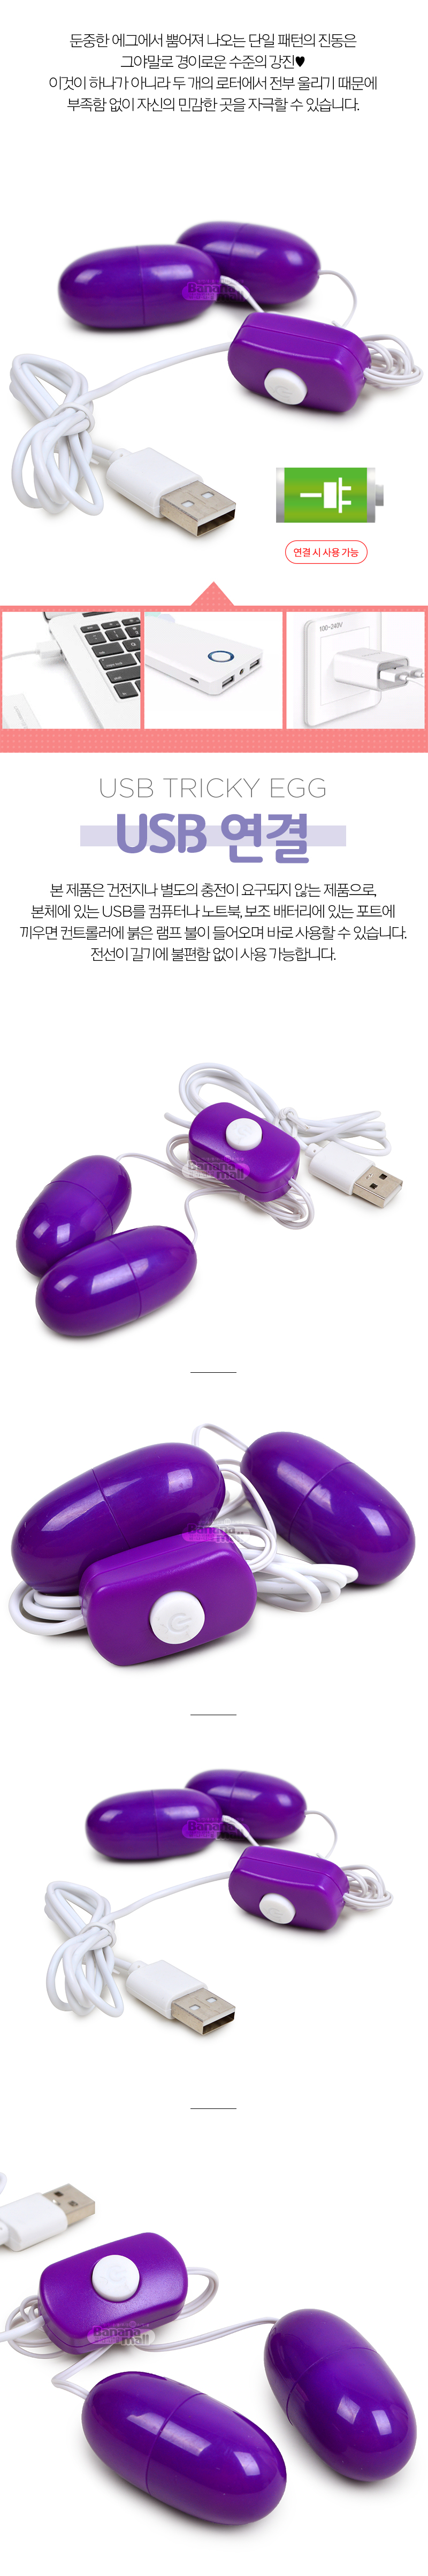 [강력 진동] USB 트리키 에그(USB Tricky Egg)